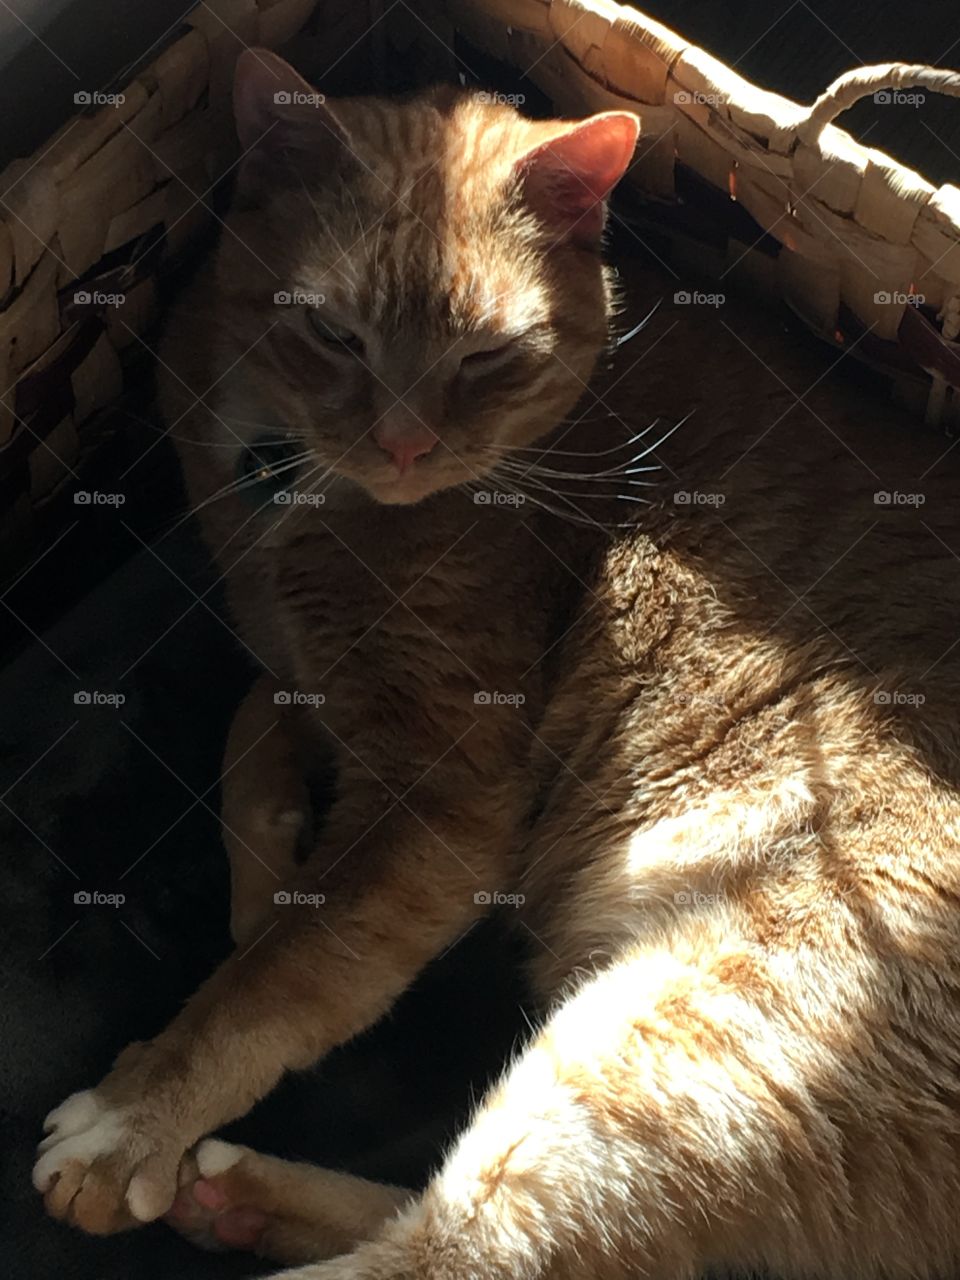 Just a cat in a box in the sun 